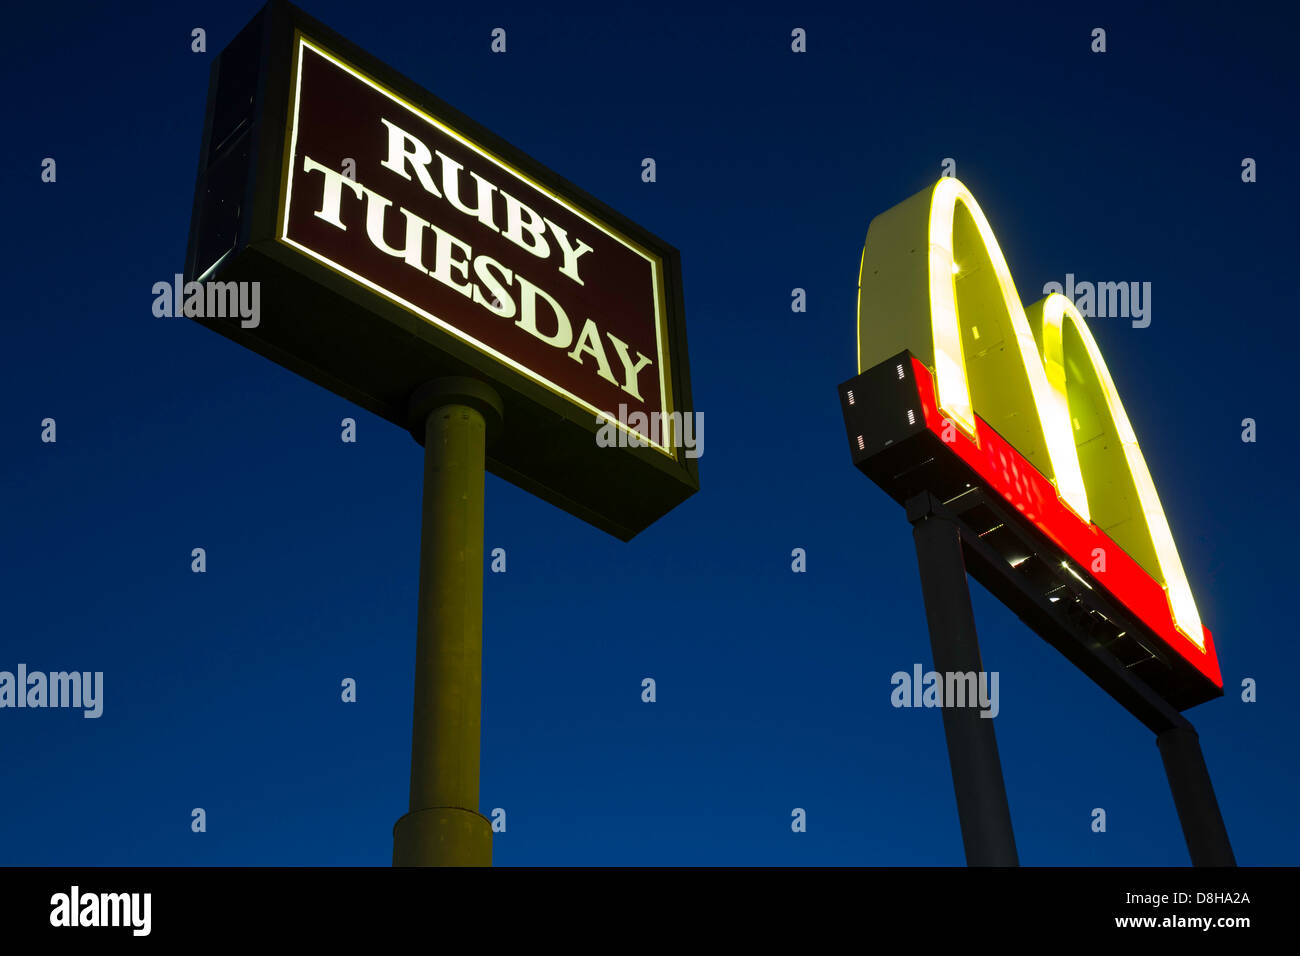 McDonald's et Ruby Tuesday's Restaurant la signalisation routière, USA Banque D'Images